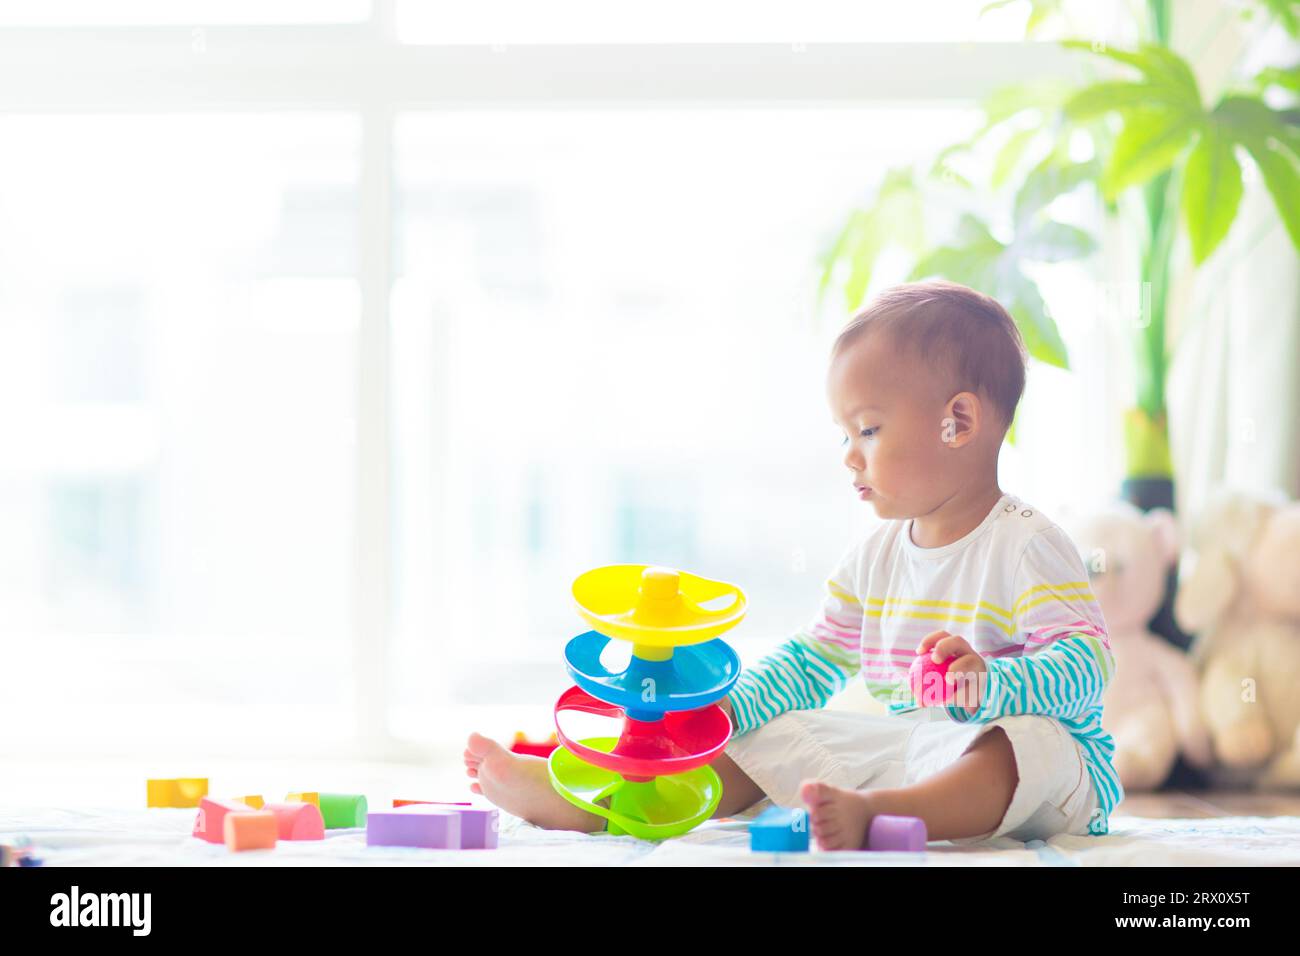 Adorable bébé asiatique apprenant à ramper et à jouer avec le jouet coloré de bloc dans la chambre blanche ensoleillée. Mignon rire enfant rampant sur un tapis de jeu. Banque D'Images